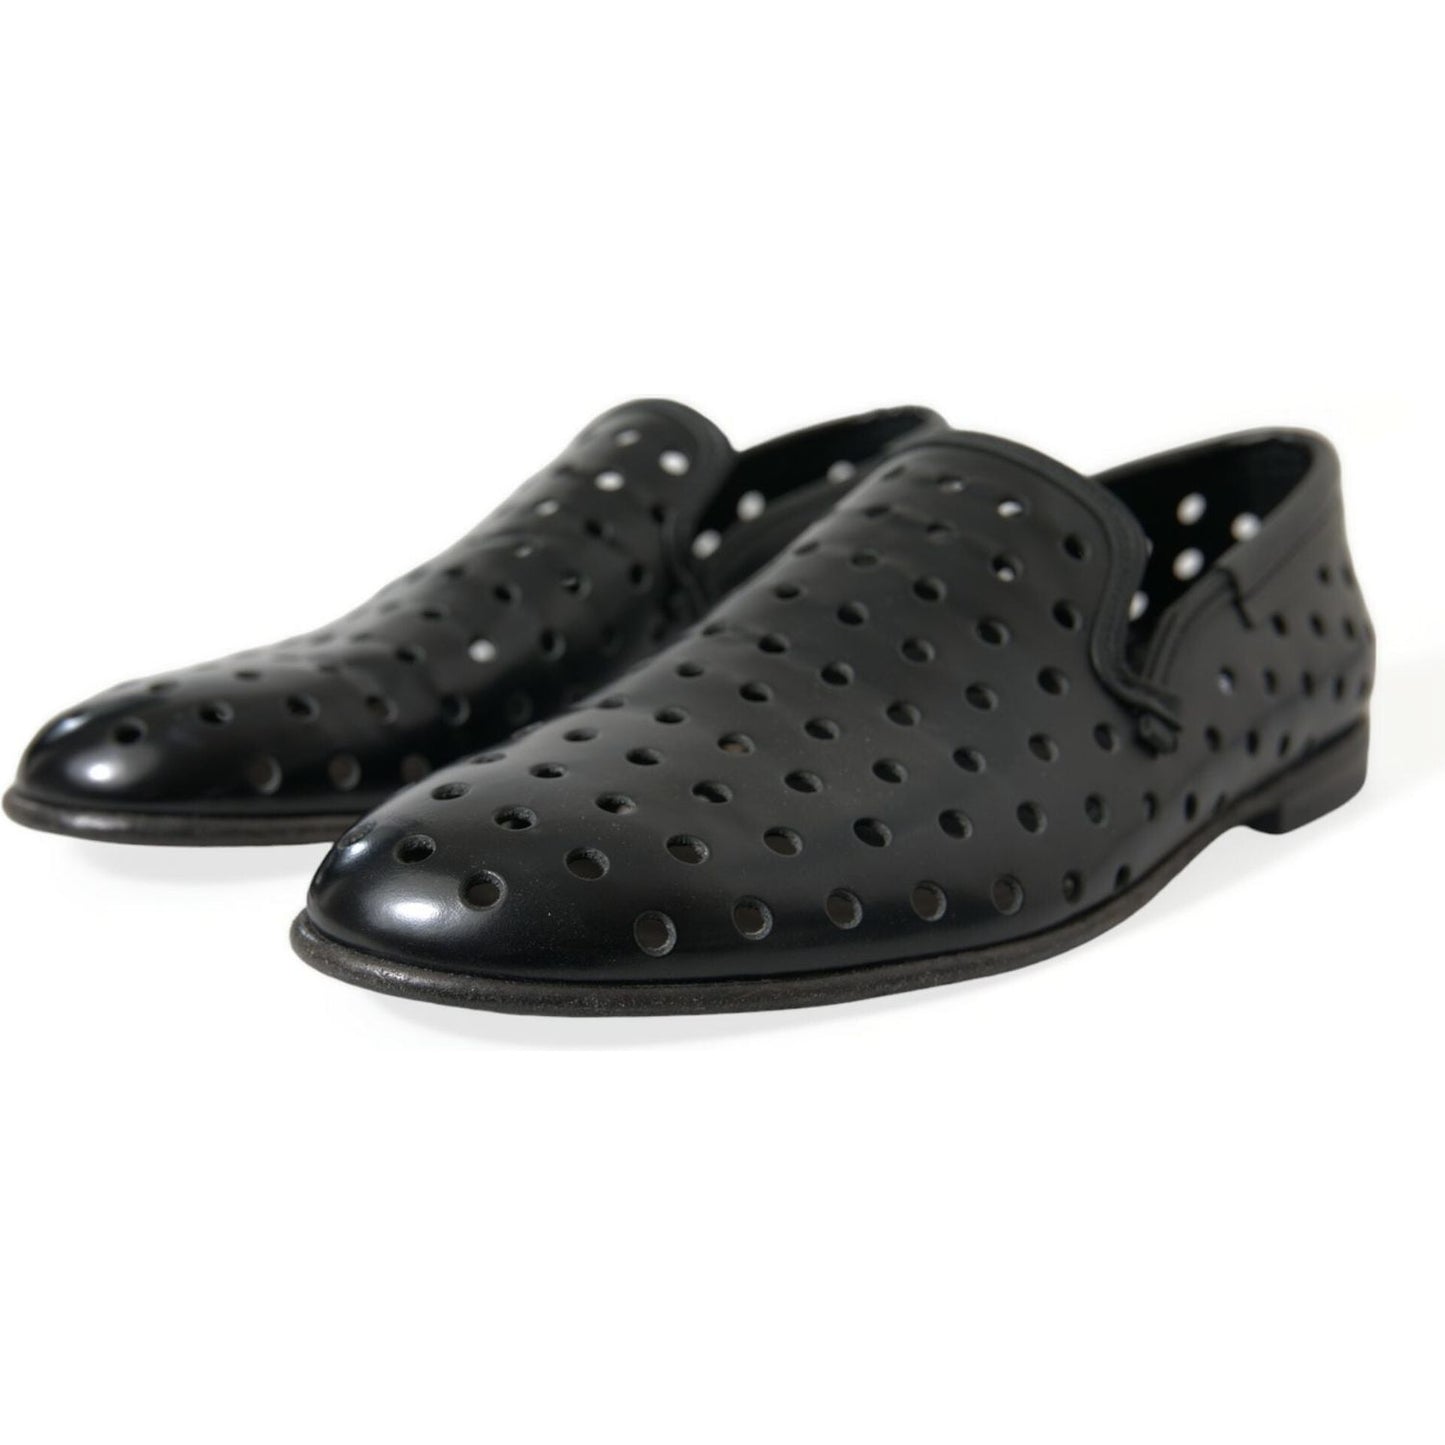 Dolce & Gabbana | Elegant Black Leather Perforated Loafers| McRichard Designer Brands   